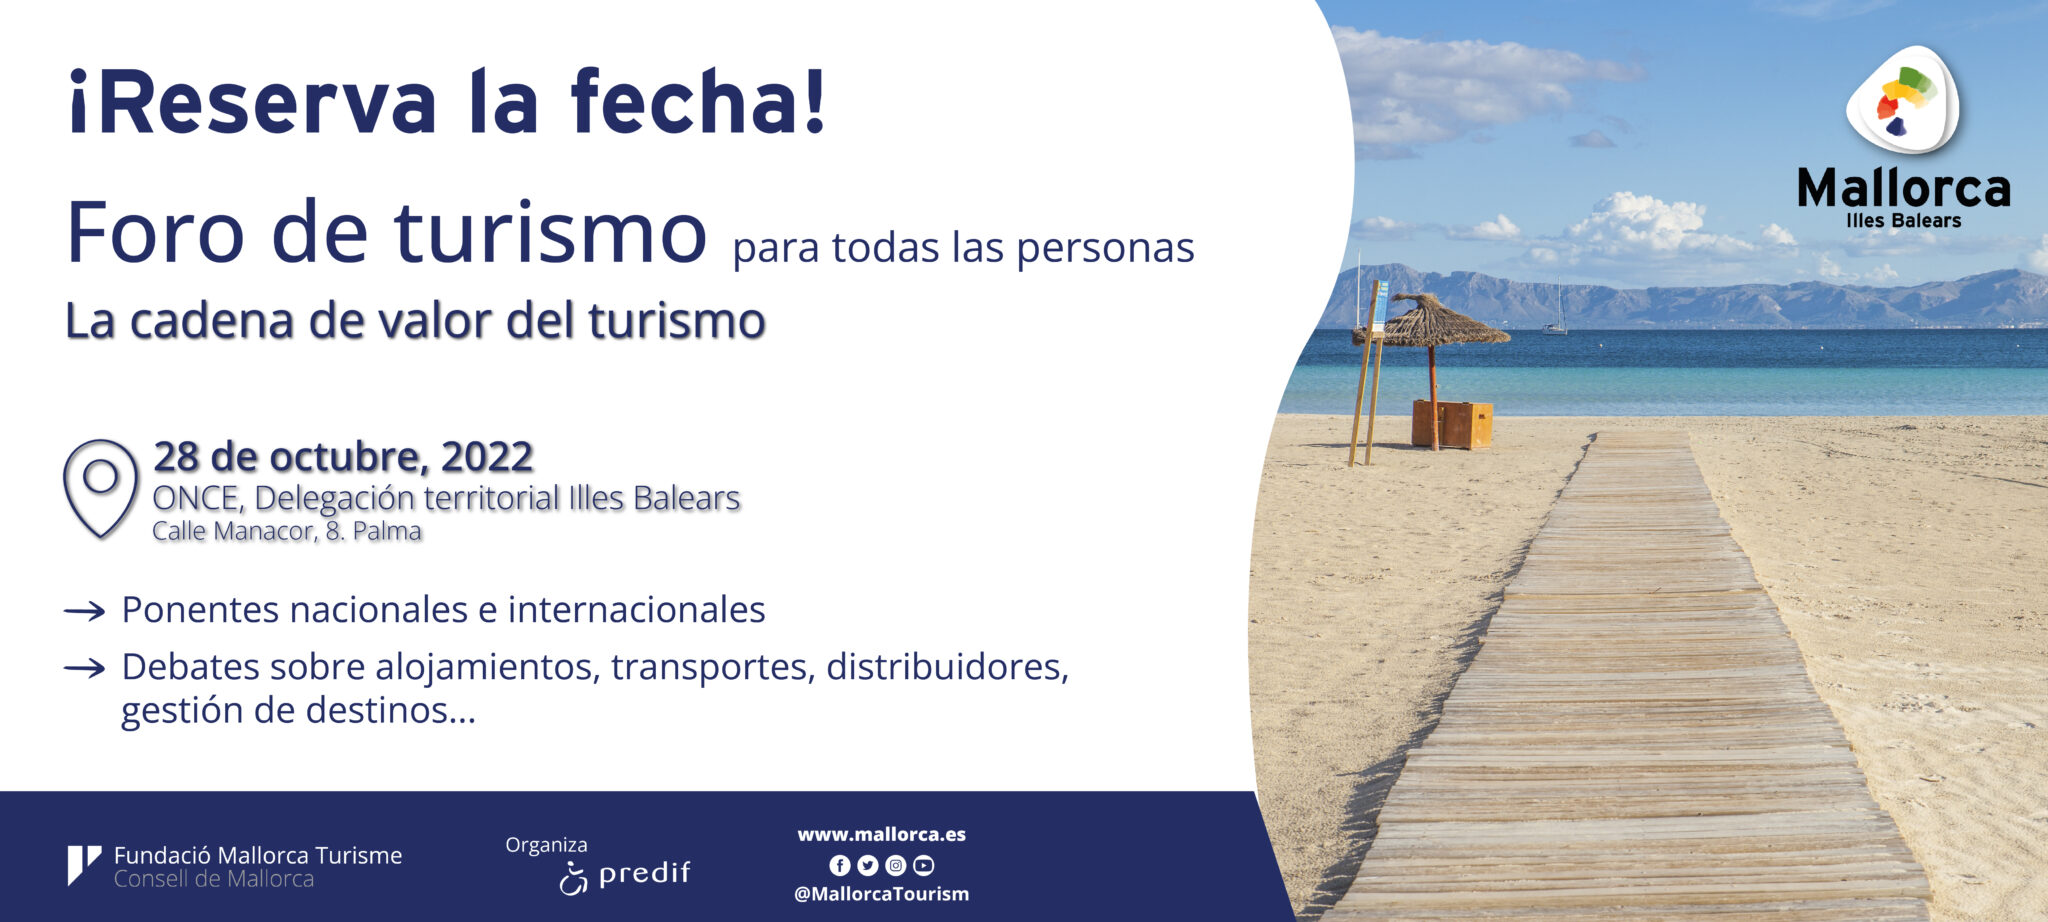 PREDIF y la Fundaciò Mallorca Turisme organizan el primer Foro de turismo para todas las personas en Mallorca